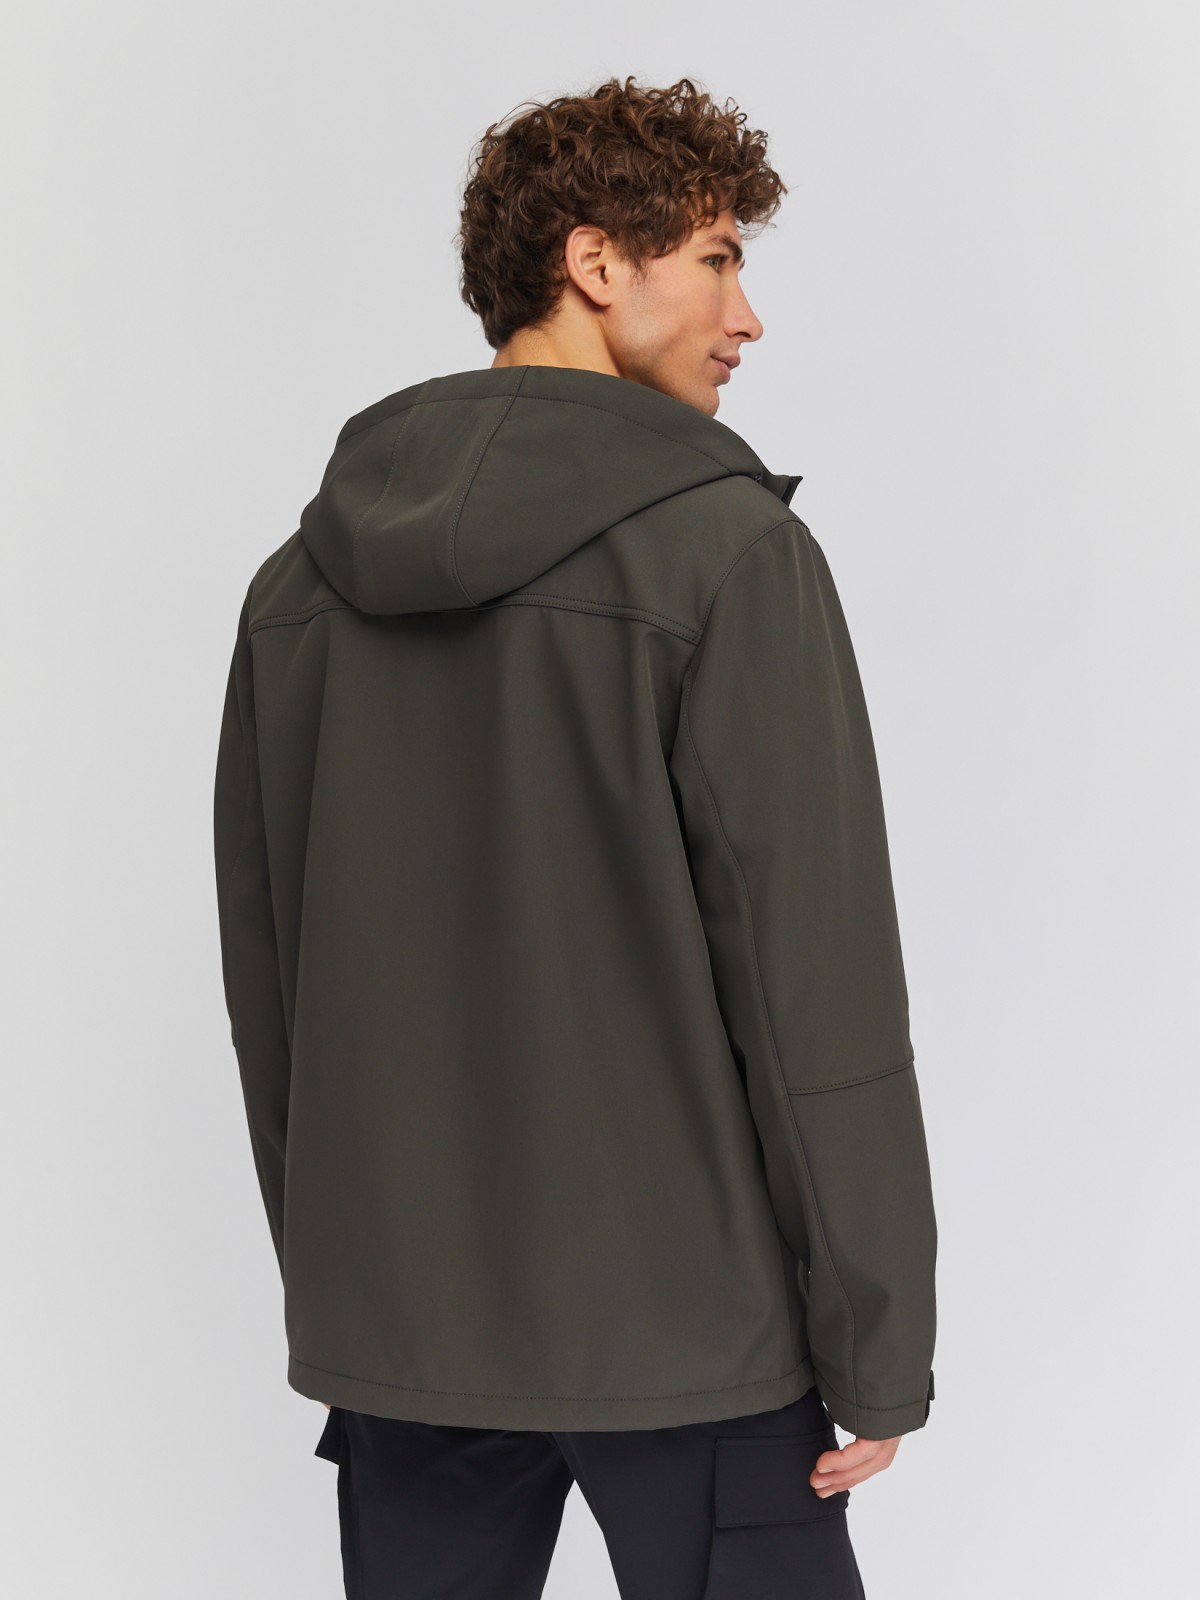 Лёгкая куртка-ветровка с капюшоном zolla 014135602014, цвет хаки, размер S - фото 6